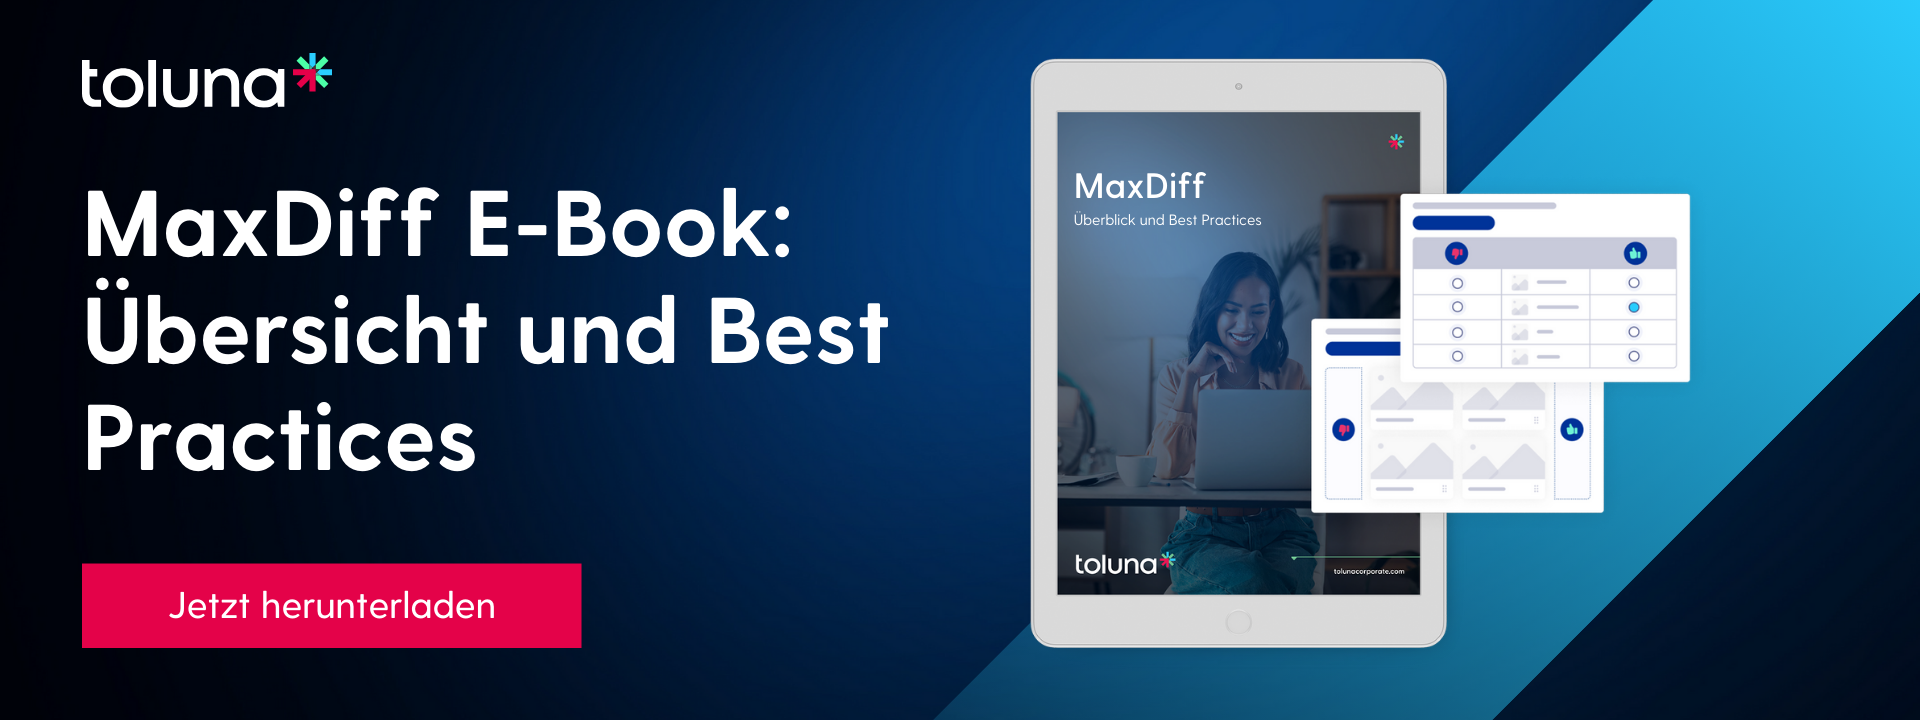 MaxDiff E-Book: Übersicht und Best Practices | Jetzt herunterladen | https://tolunacorporate.com/lp/maxdiff-ueberblick-und-best-practices/?lang=de